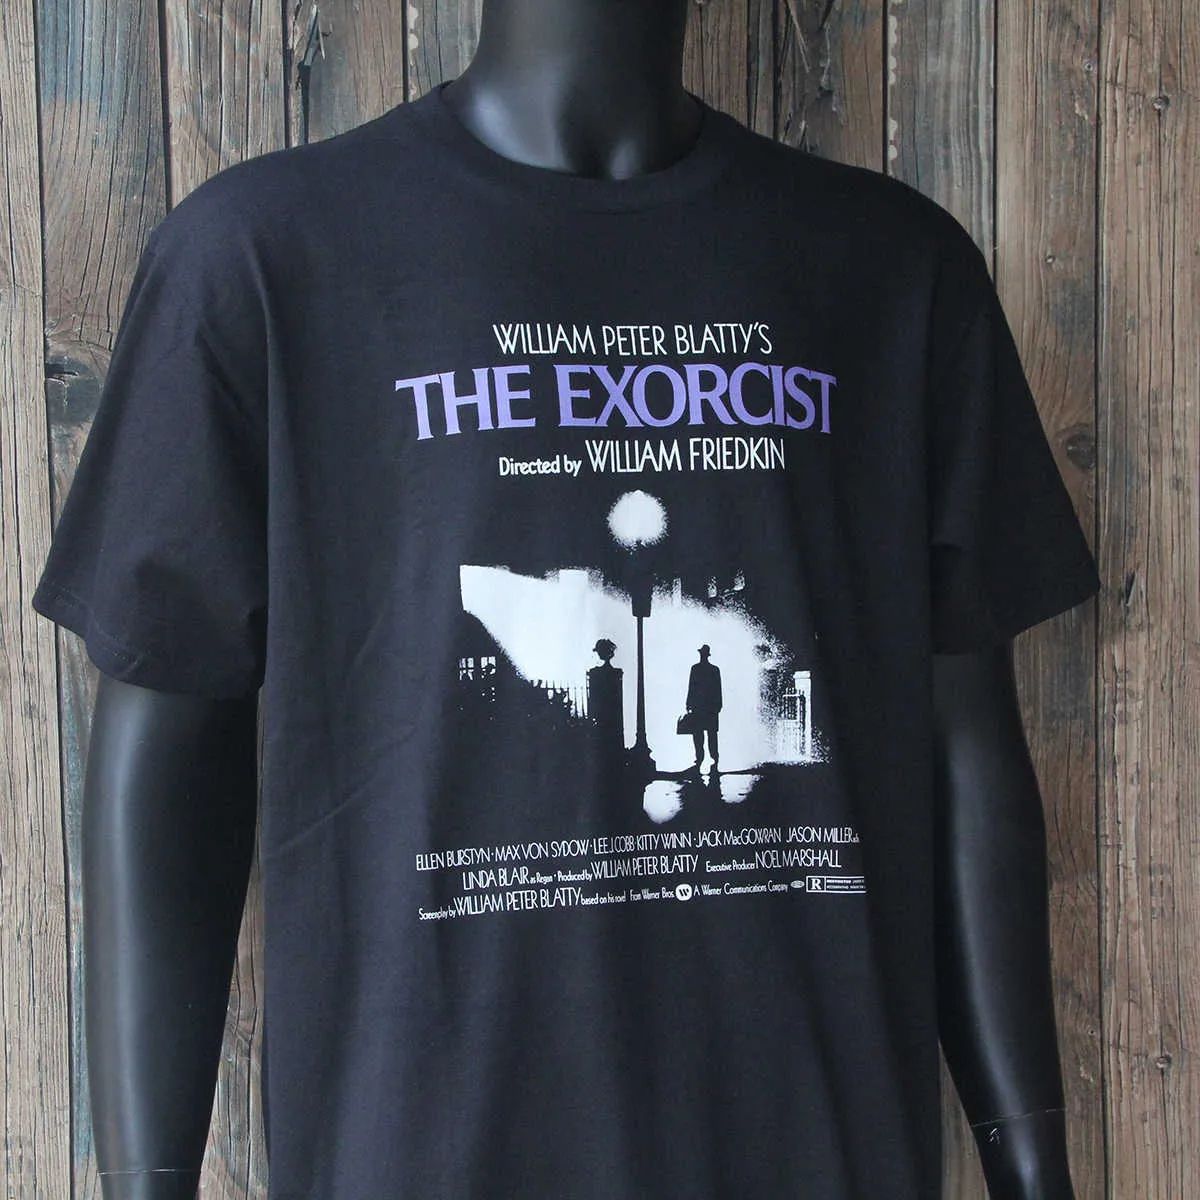 Мужские футболки The Exorcist футболка ужасов фильм «Сияющий детский культ розмари» черный хлопок футболки J230516